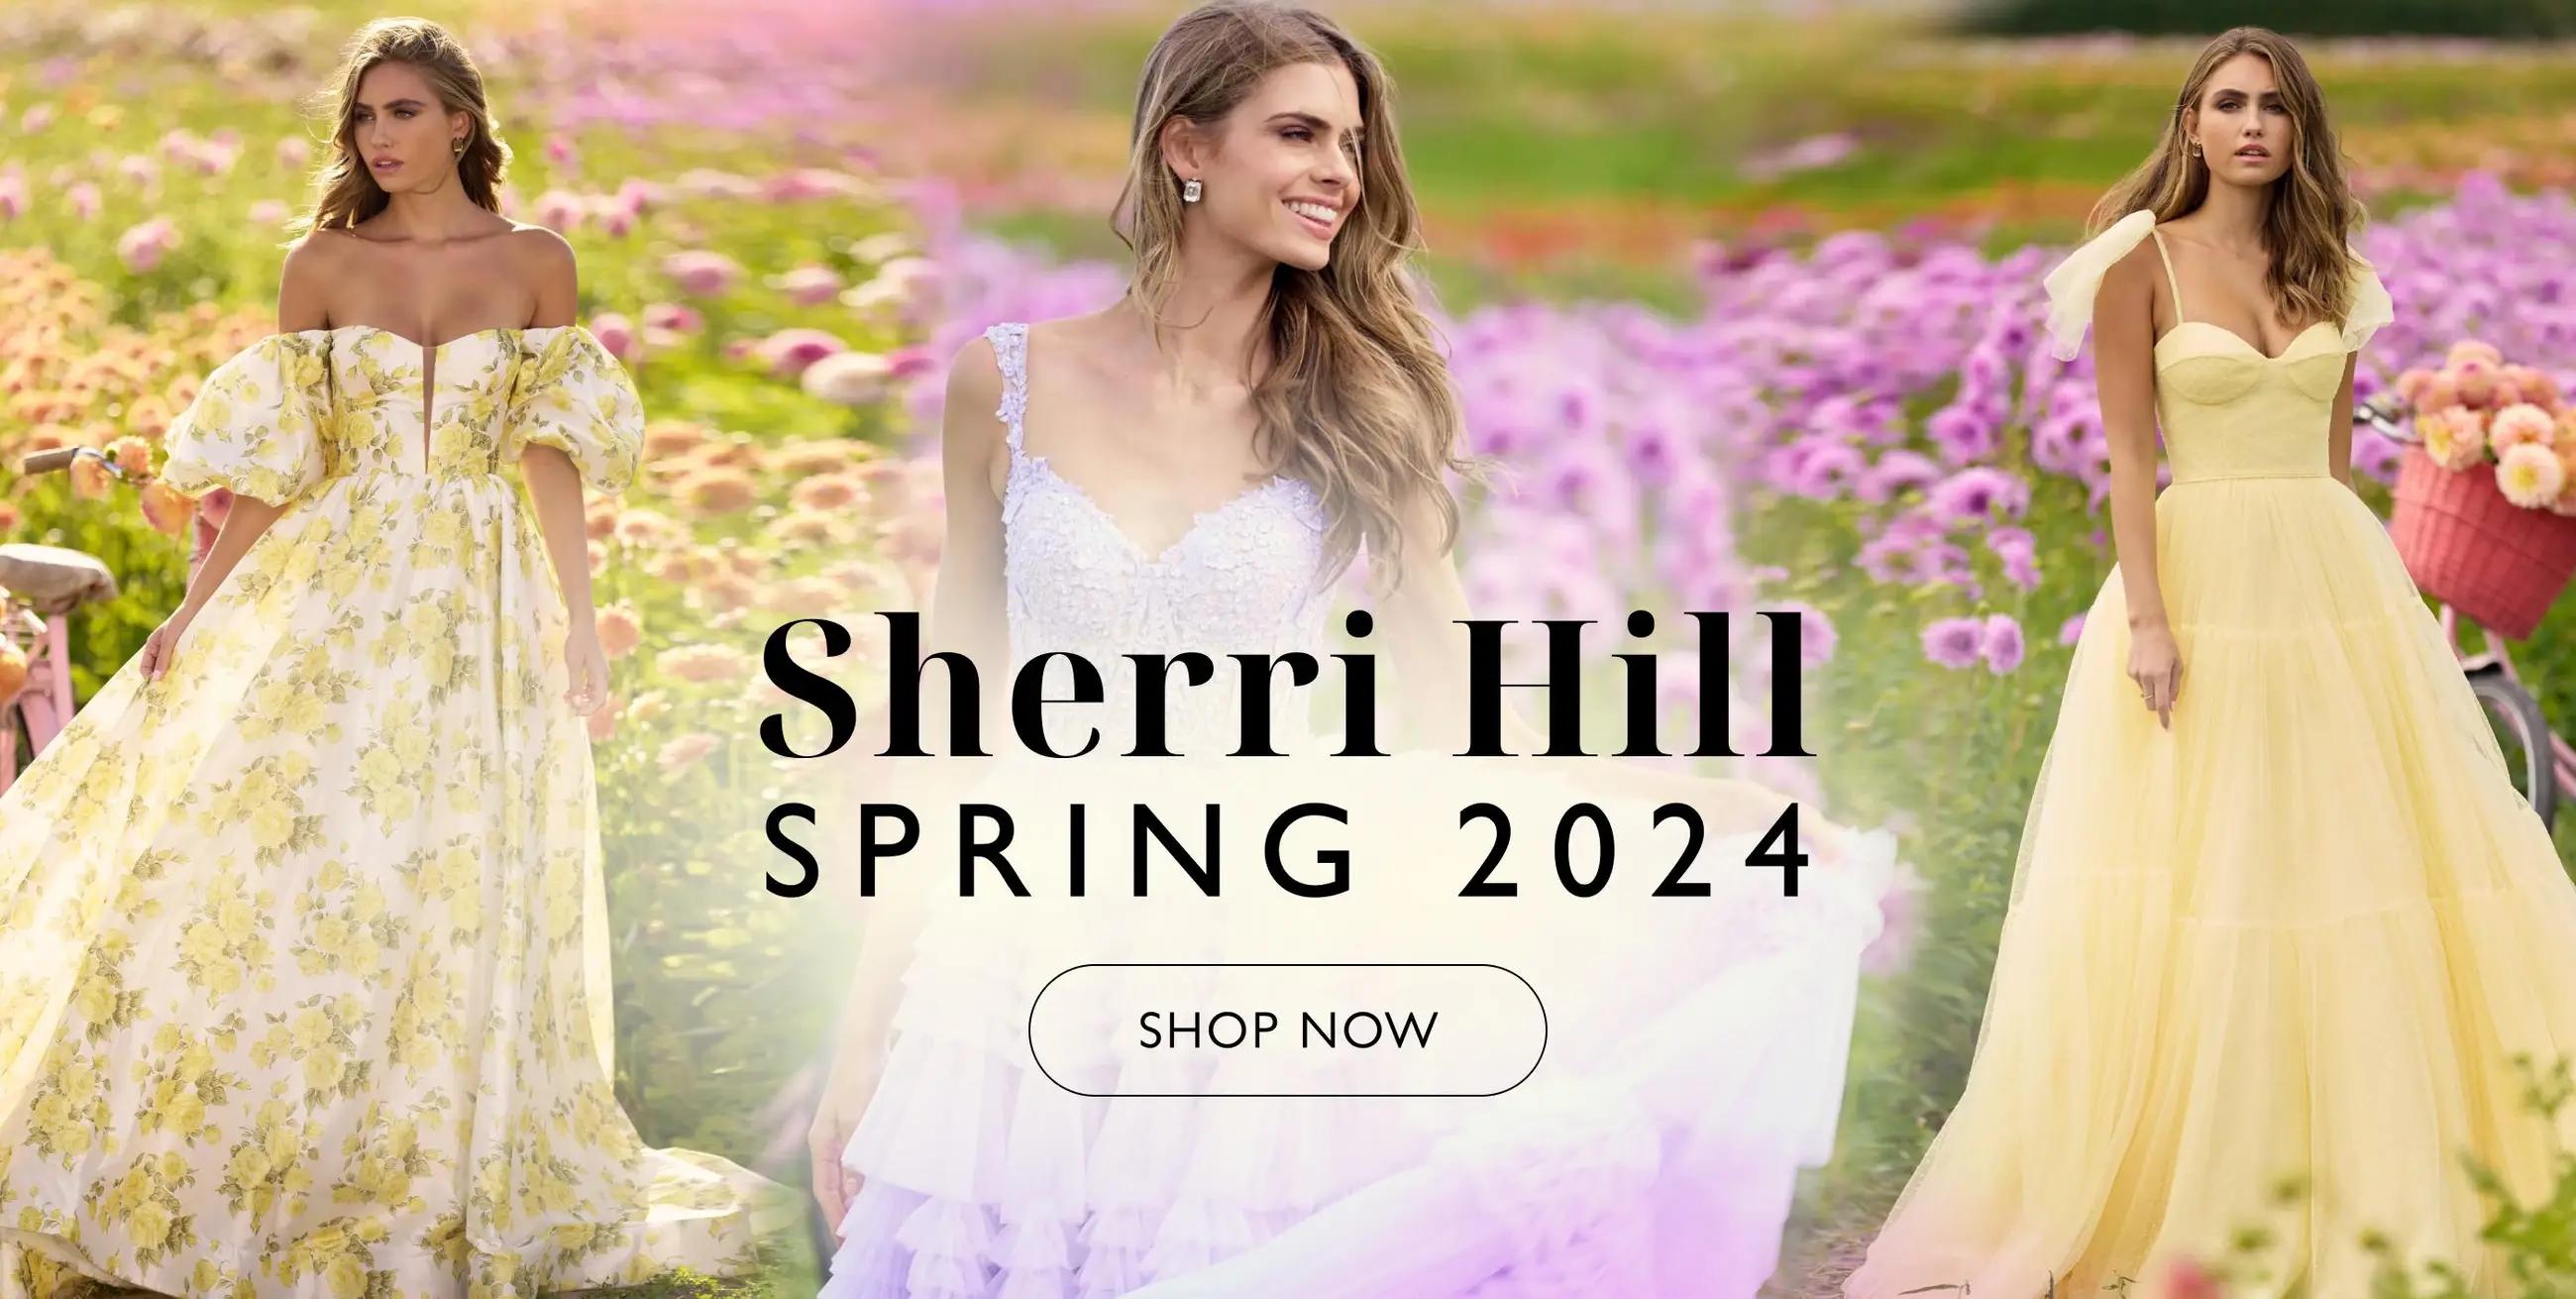 Sherri Hill Spring 2024 banner for deskop